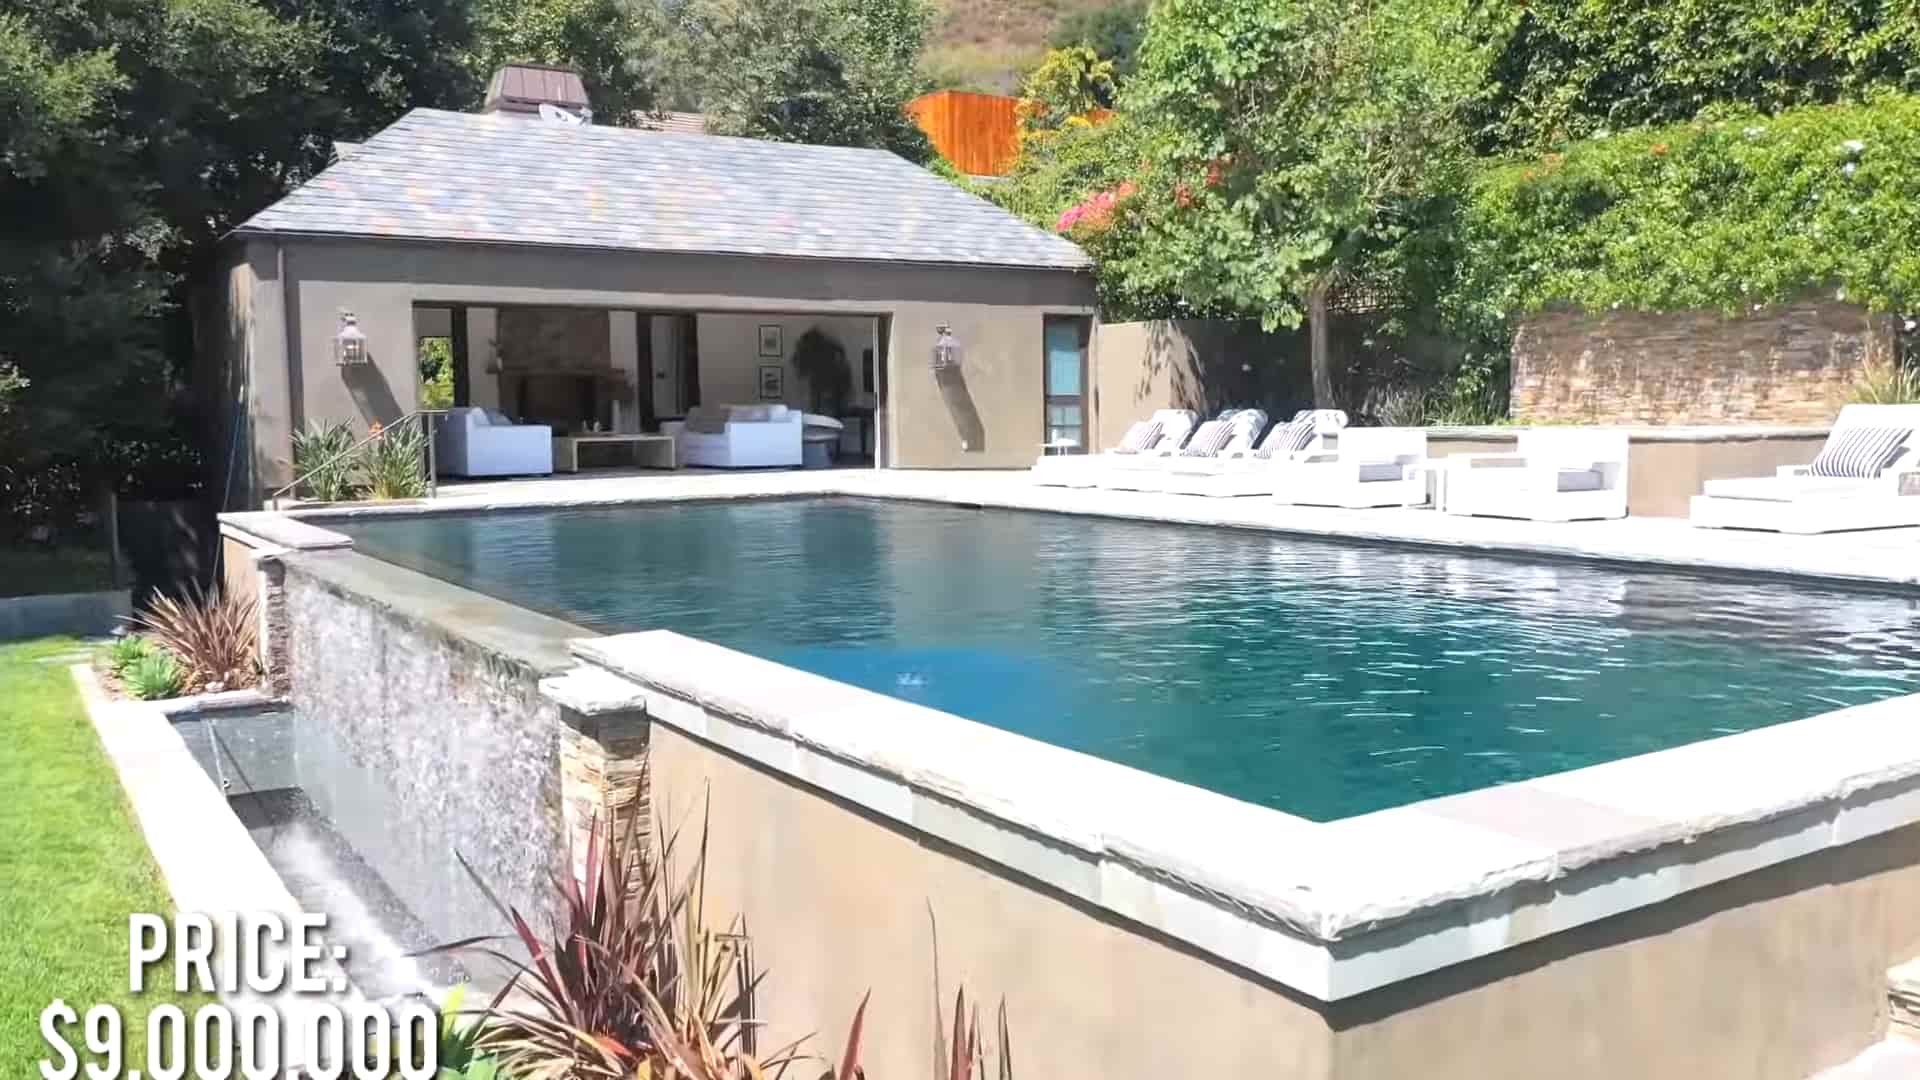 Ethan Klein’s pool 